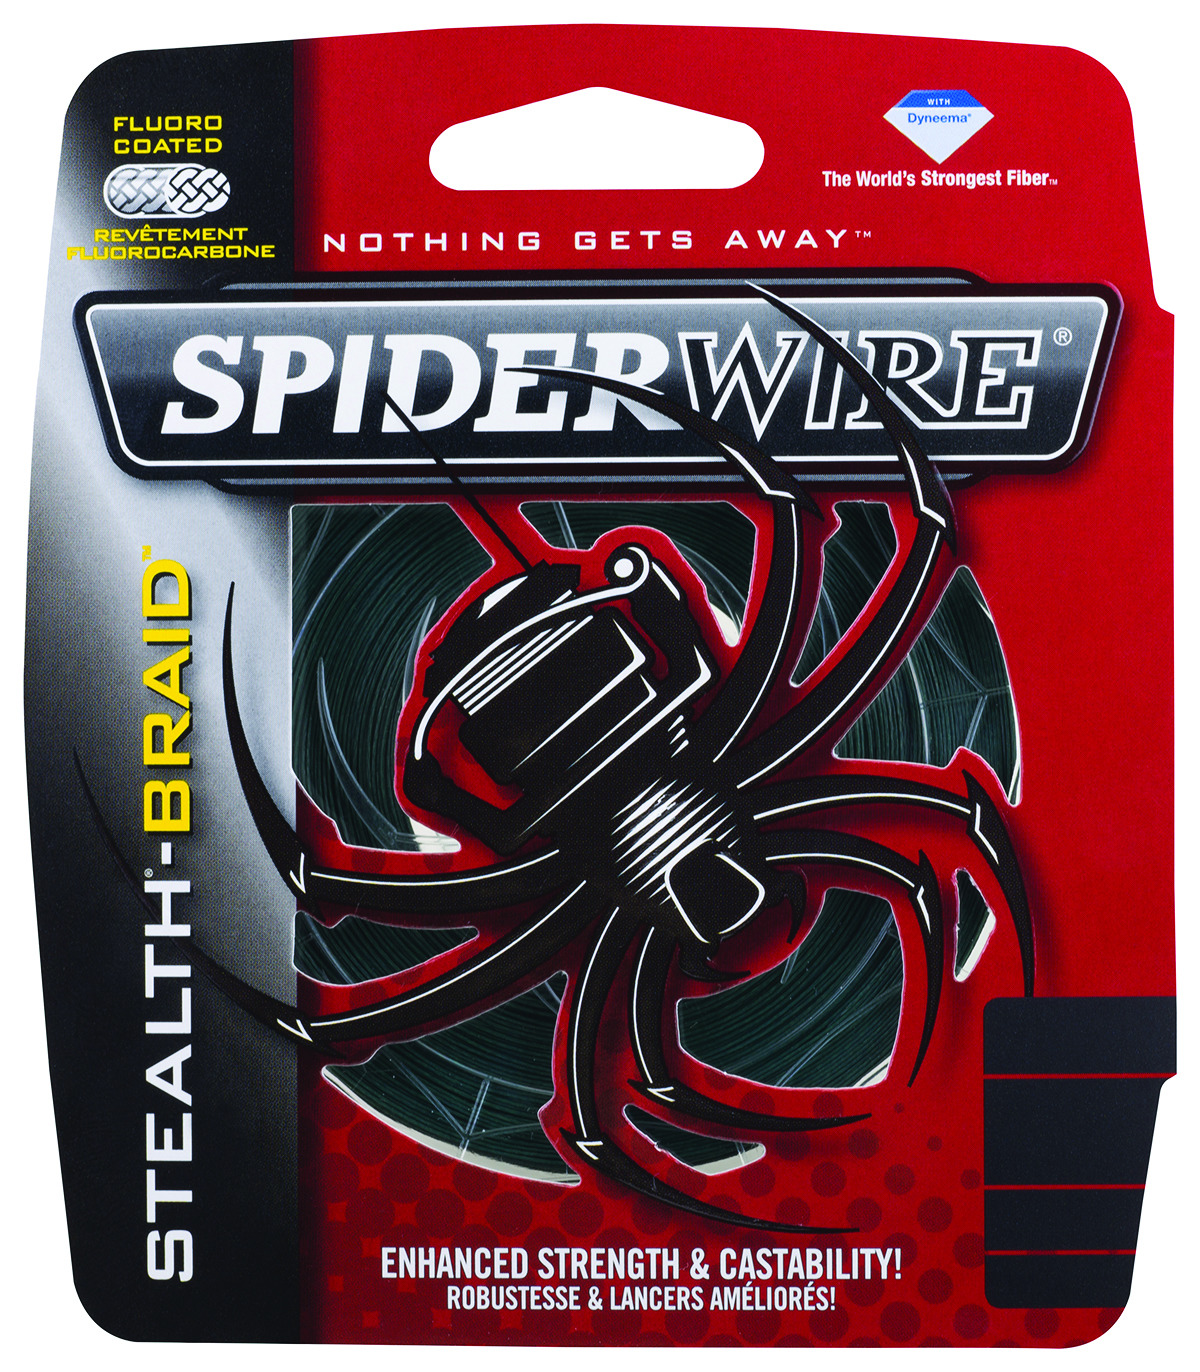 Spiderwire Durabraid 300yd